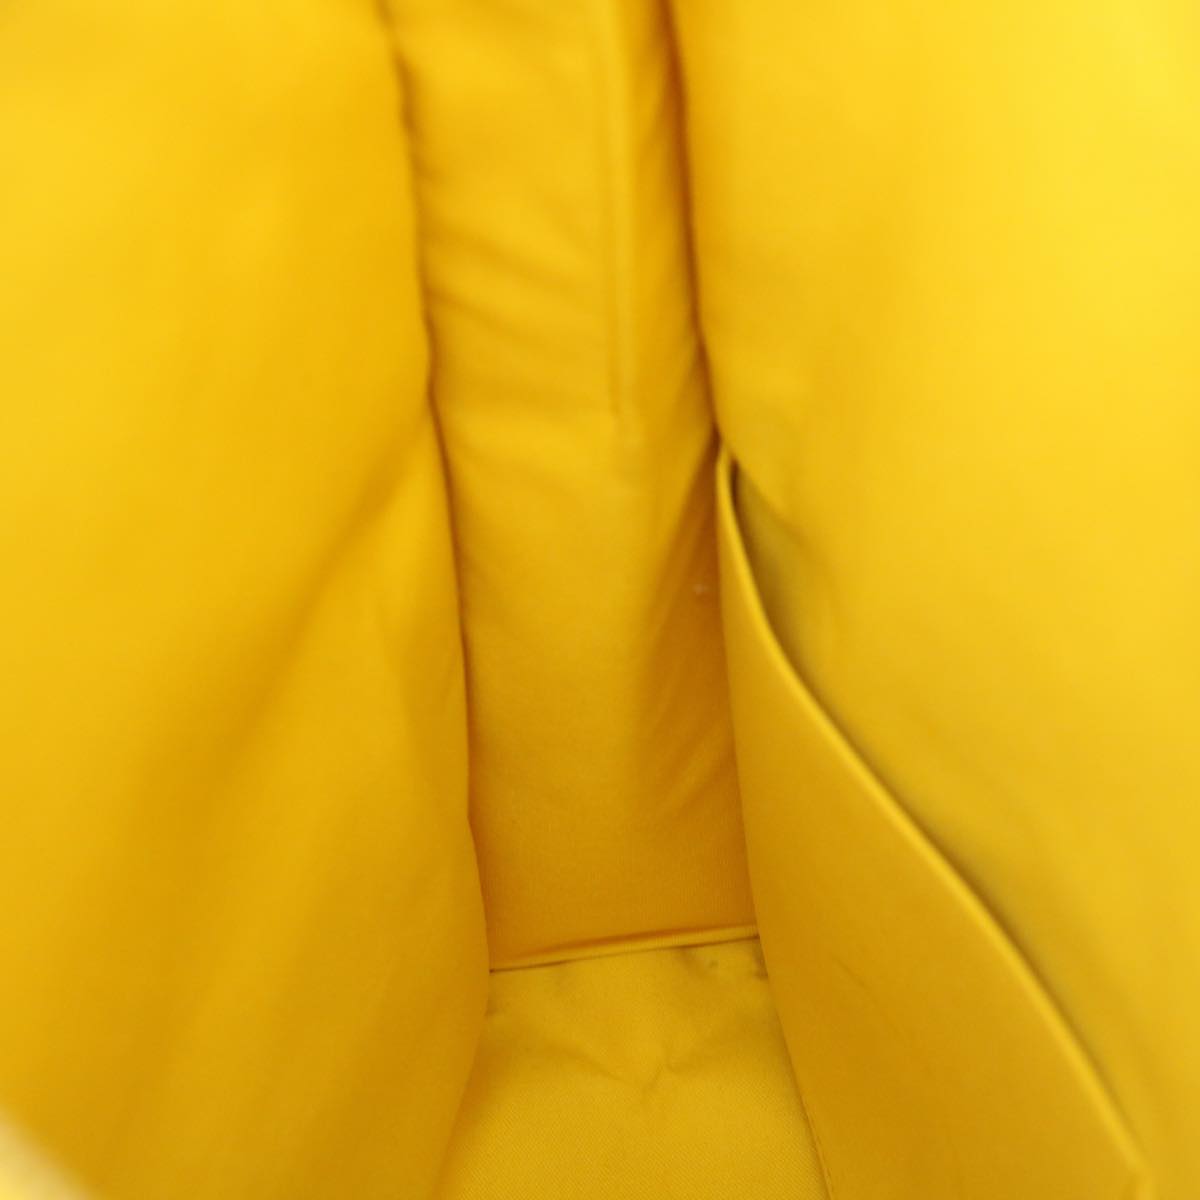 LOUIS VUITTON Damier Color Mobile 2way Shoulder Bag Yellow N41305 LV Auth 27711A